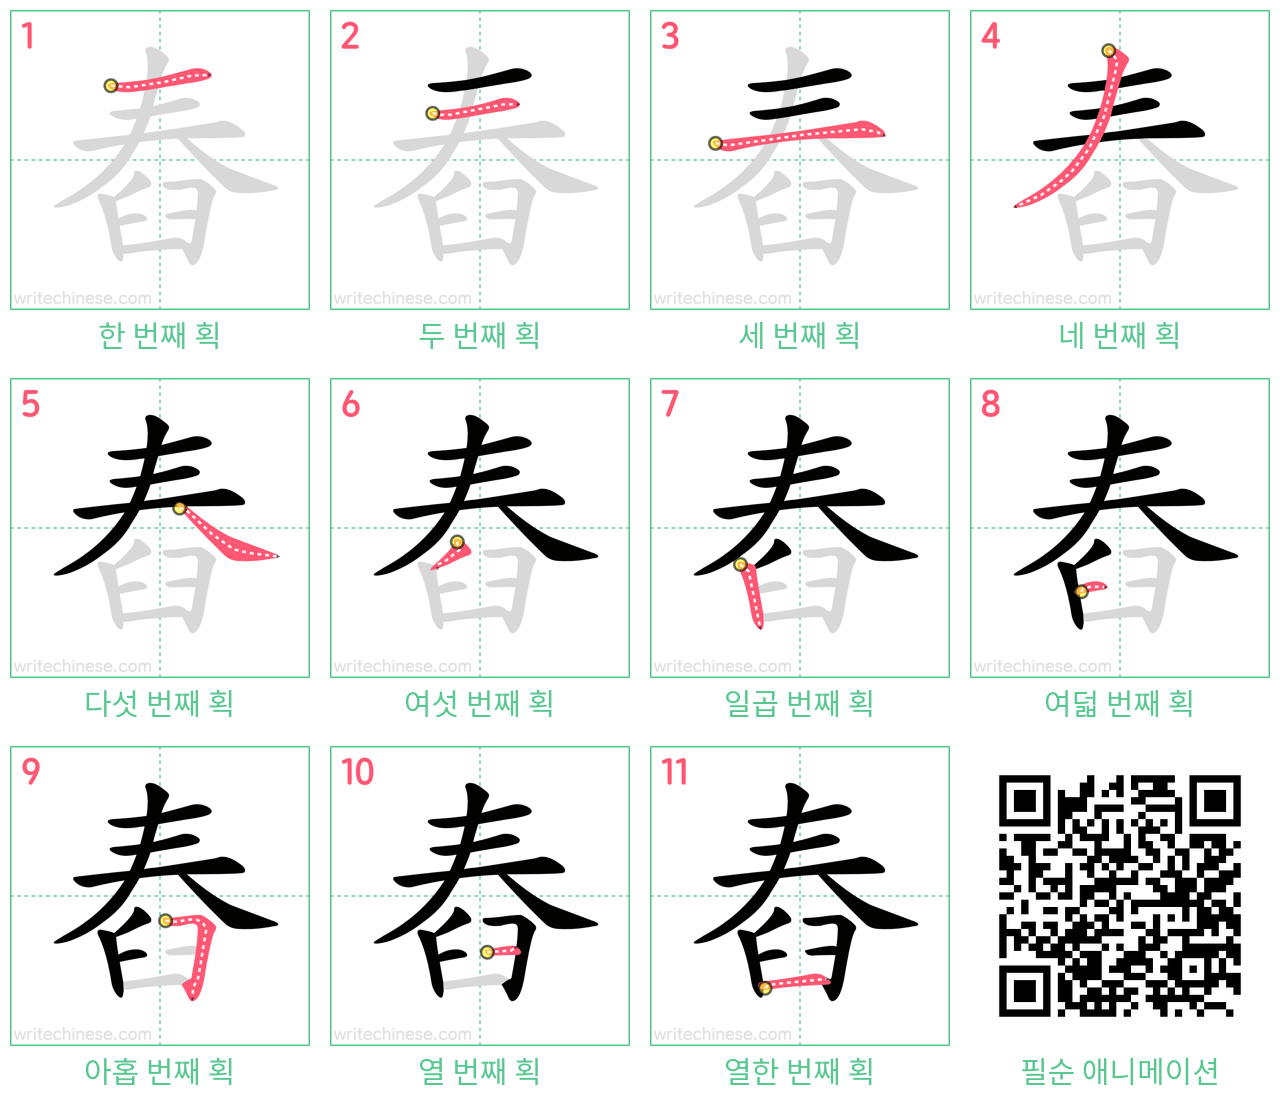 舂 step-by-step stroke order diagrams